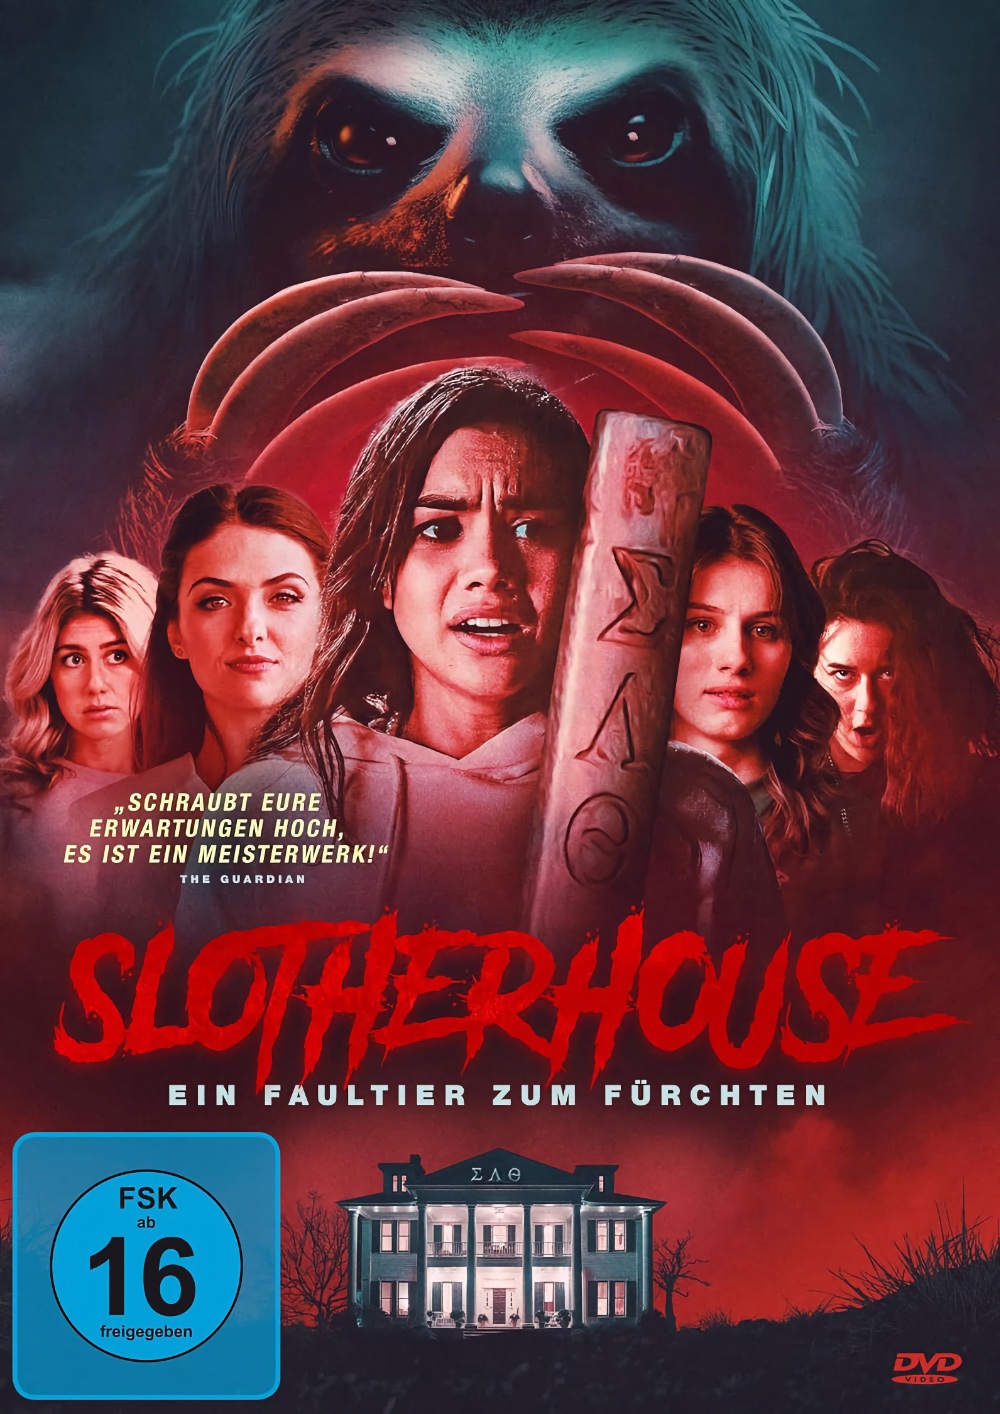 Slotherhouse – Ein Faultier zum Fürchten